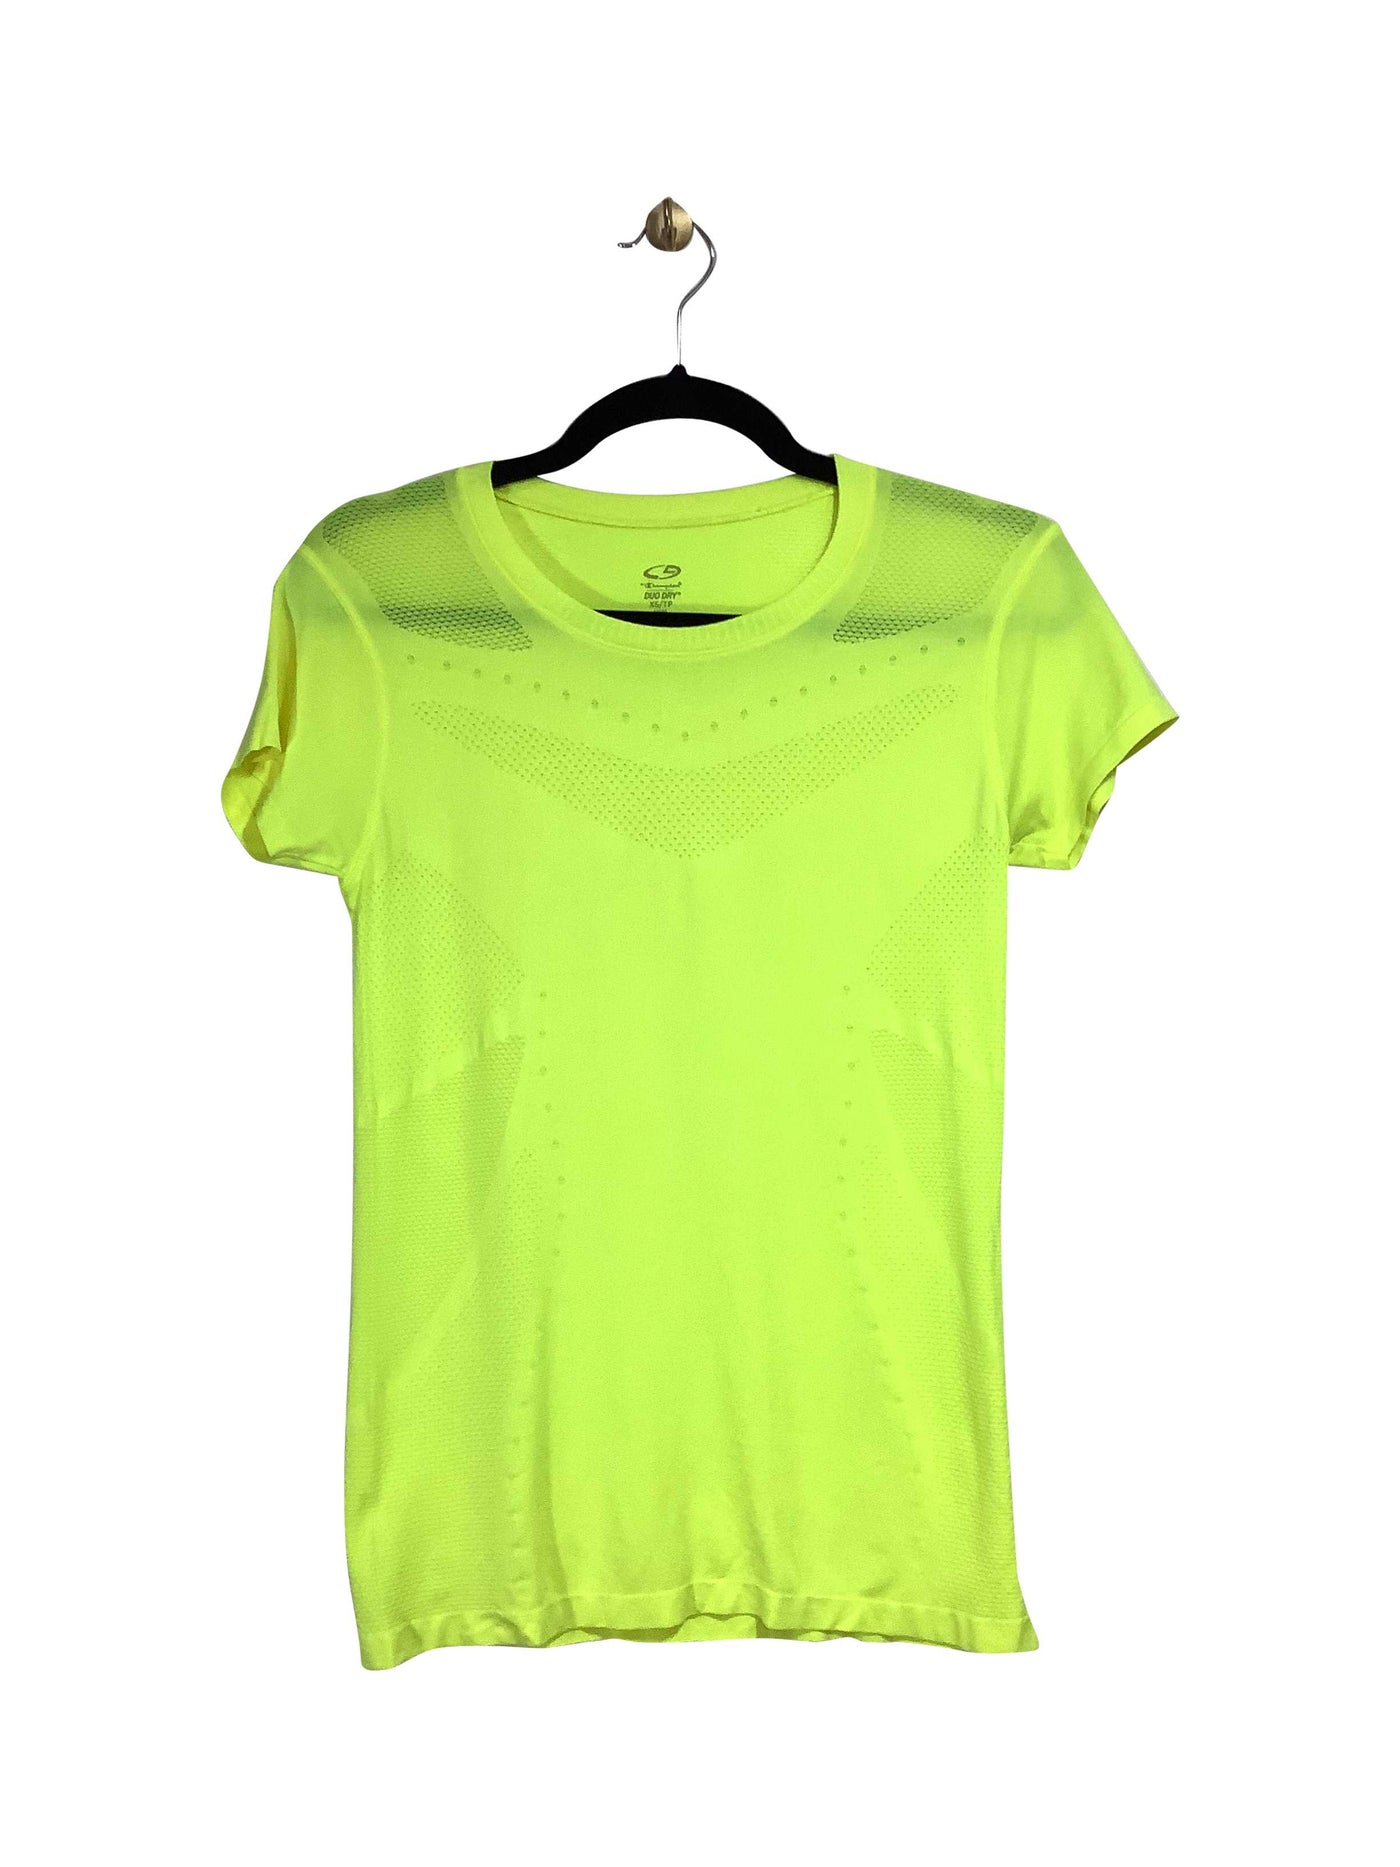 CHAMPION Regular fit Activewear Top in Yellow - Size XS | 13.49 $ KOOP